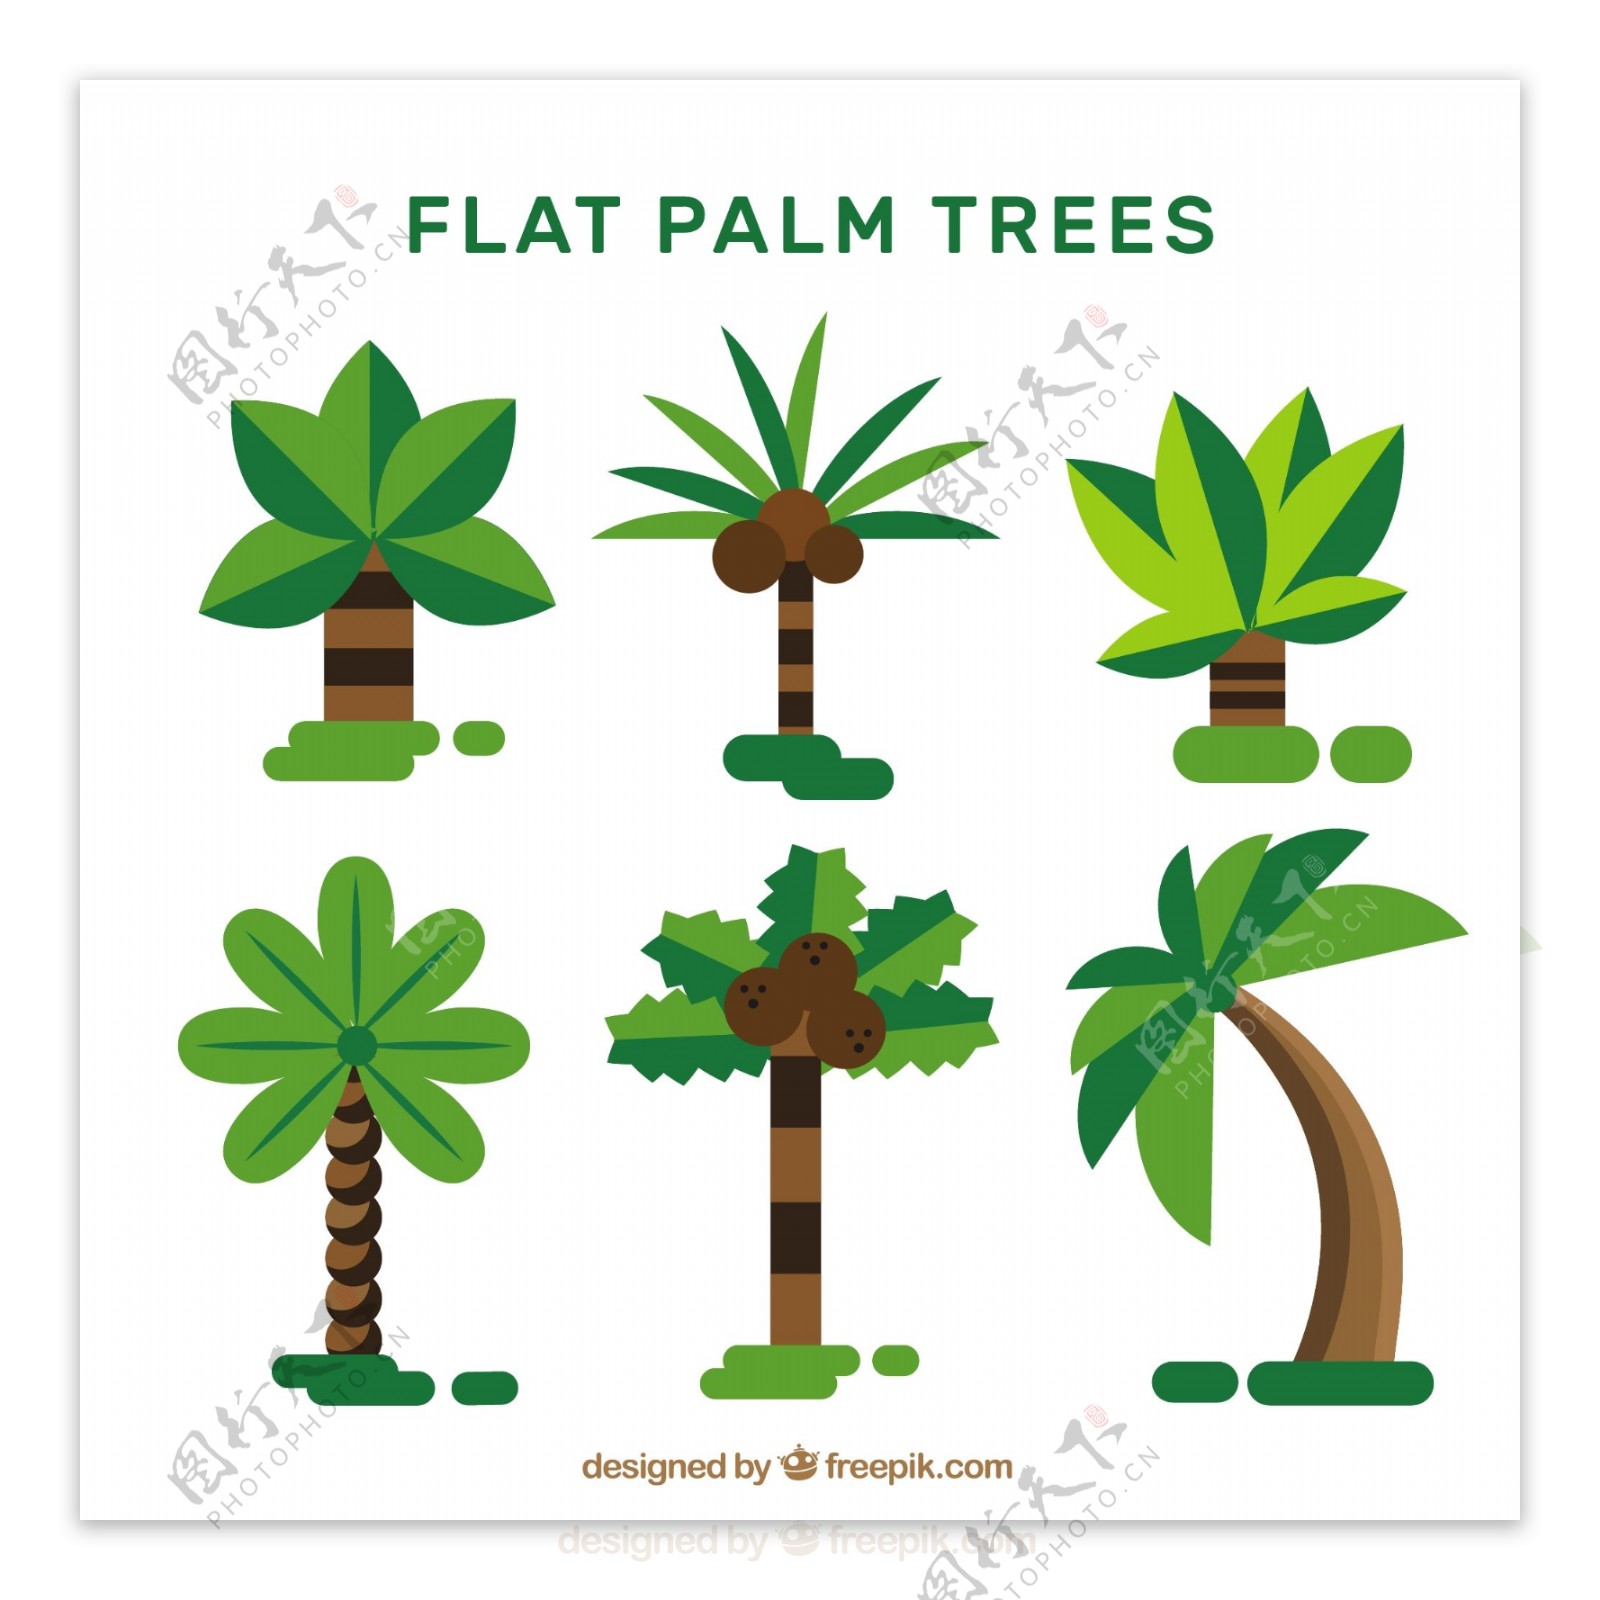 平面设计中的棕榈树